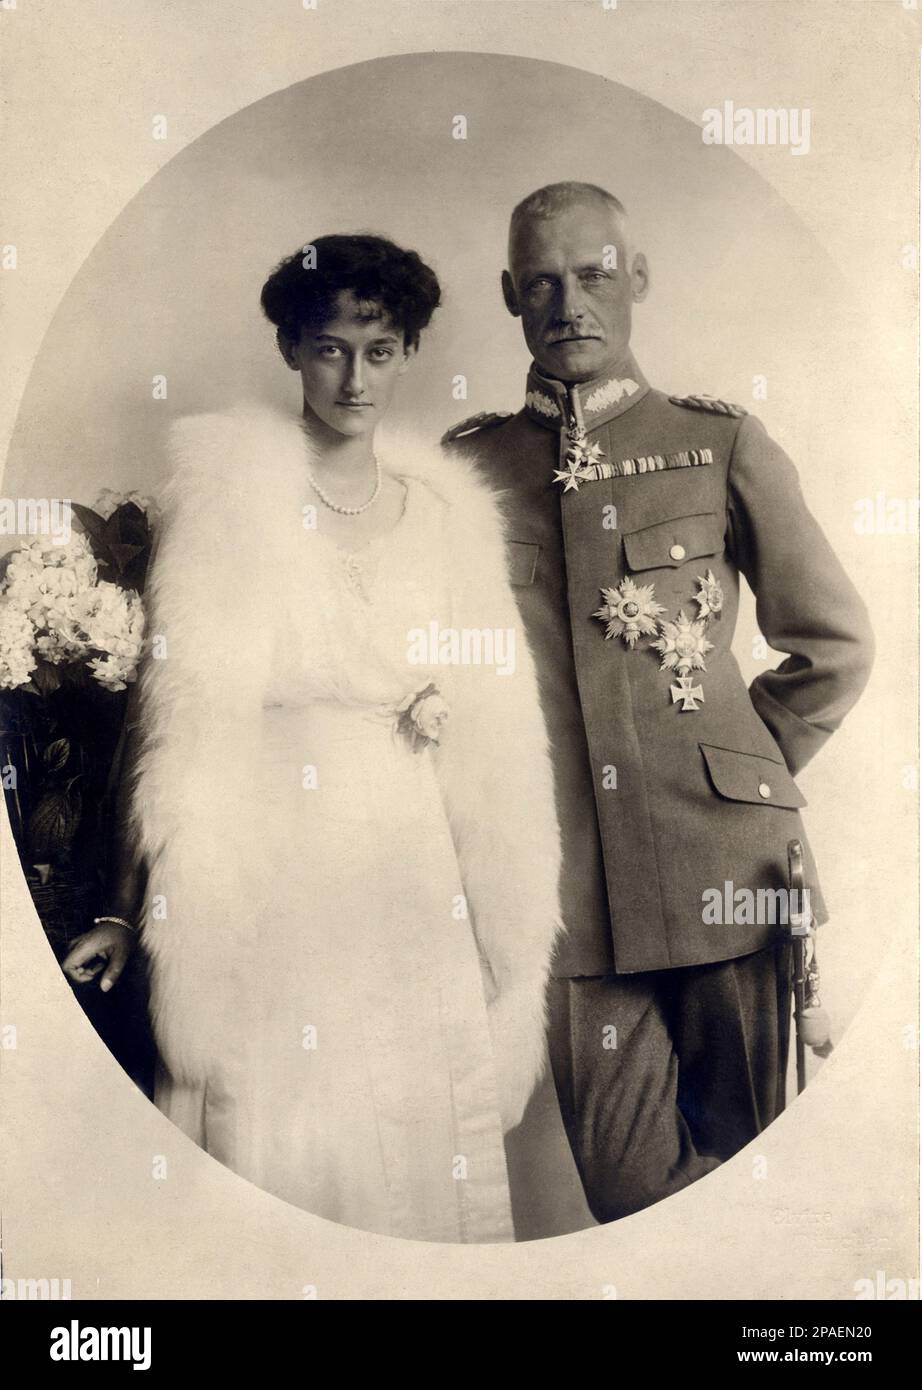 1921 , 7 aprile , Monaco di Baviera : il Kronprinz RUPPRECHT von BAYERN (Wittelsbach di Baviera, 1869 - 1955 ) con la moglie ANTOINETTE von LUXEMBURG di Nassau Weilburg (1899 - 1954 ), quarta figlia di Guillaume IV, Granduca di Lussemburgo, Che regnò tra il 1905 e il 1912, e Maria Anna, principessa della Casa portoghese di Braganza. I suoi nonni materni erano Miguel di Portogallo e Adelaide di Lowenstein Wertheim-Rosenberg . Era la sorella minore di due granduchesse successive: Marie-Adelaide e Charlotte . Foto di Elvira , Monaco . Rupprecht è nato in Foto Stock